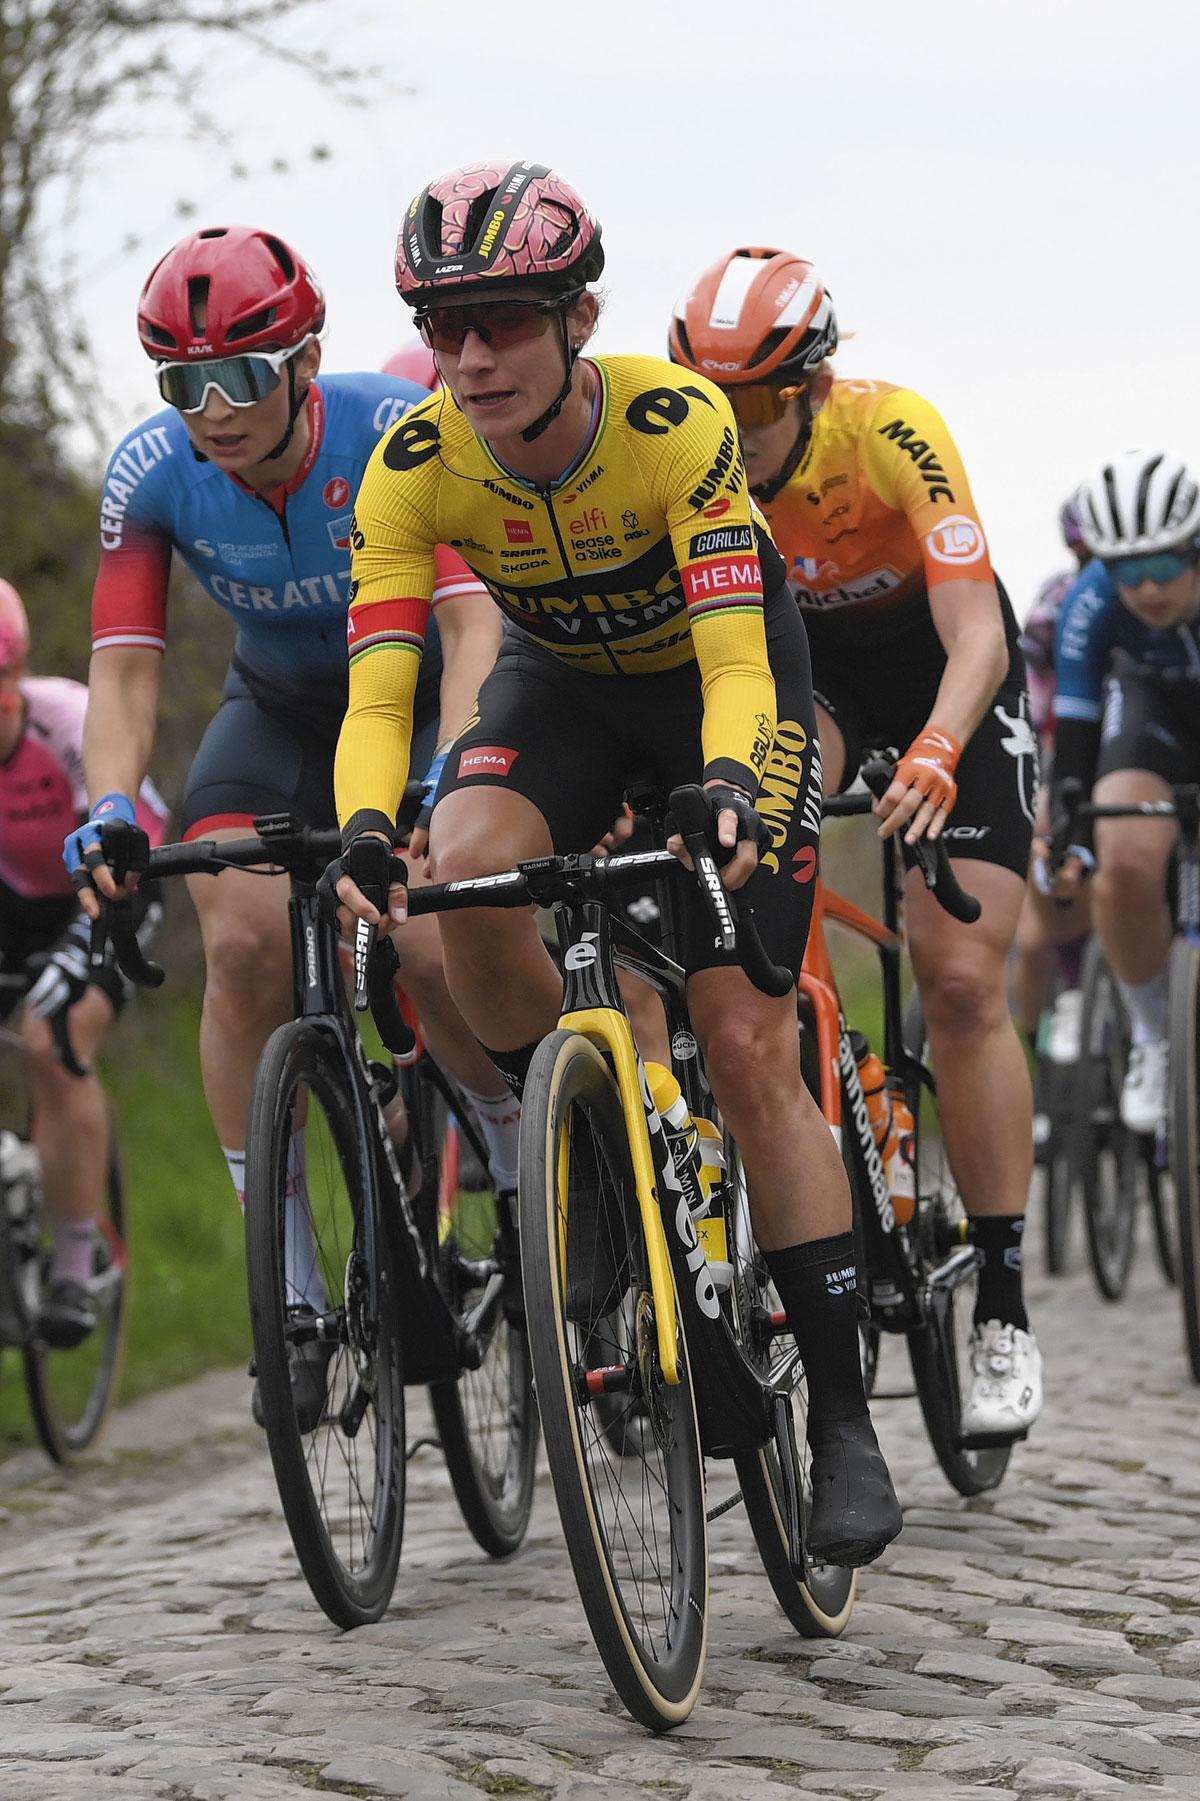 Marianne Vos in Parijs-Roubaix dit jaar. 'Ze beheerst alle aspecten van de sport.'